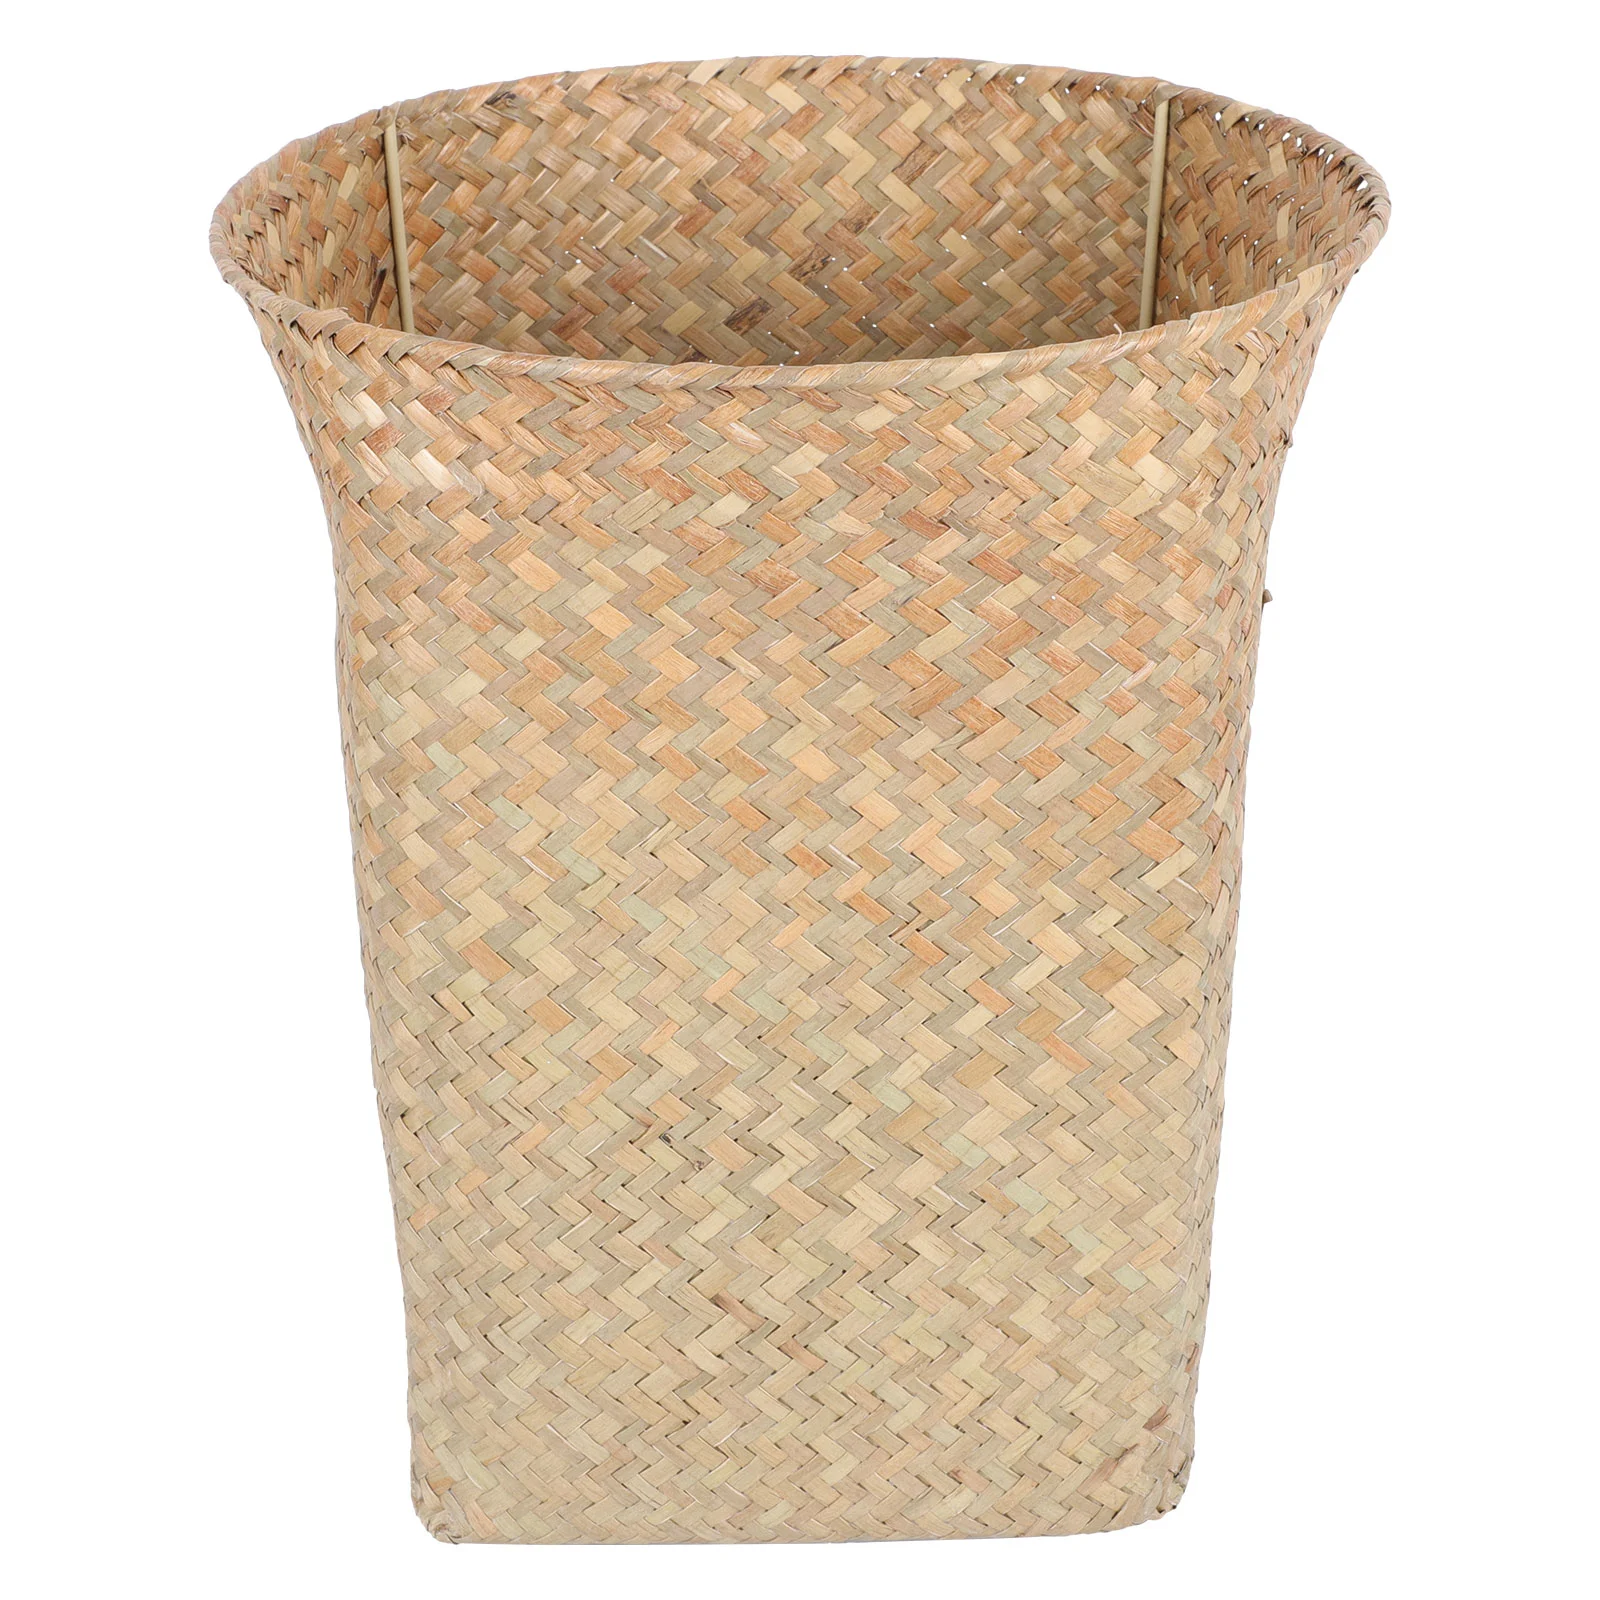 

Basket Trash Can Woven Waste Rattan Wicker Storage Bin Garbage Rubbish Container Wastebasket Seagrass Paper Baskets Straw